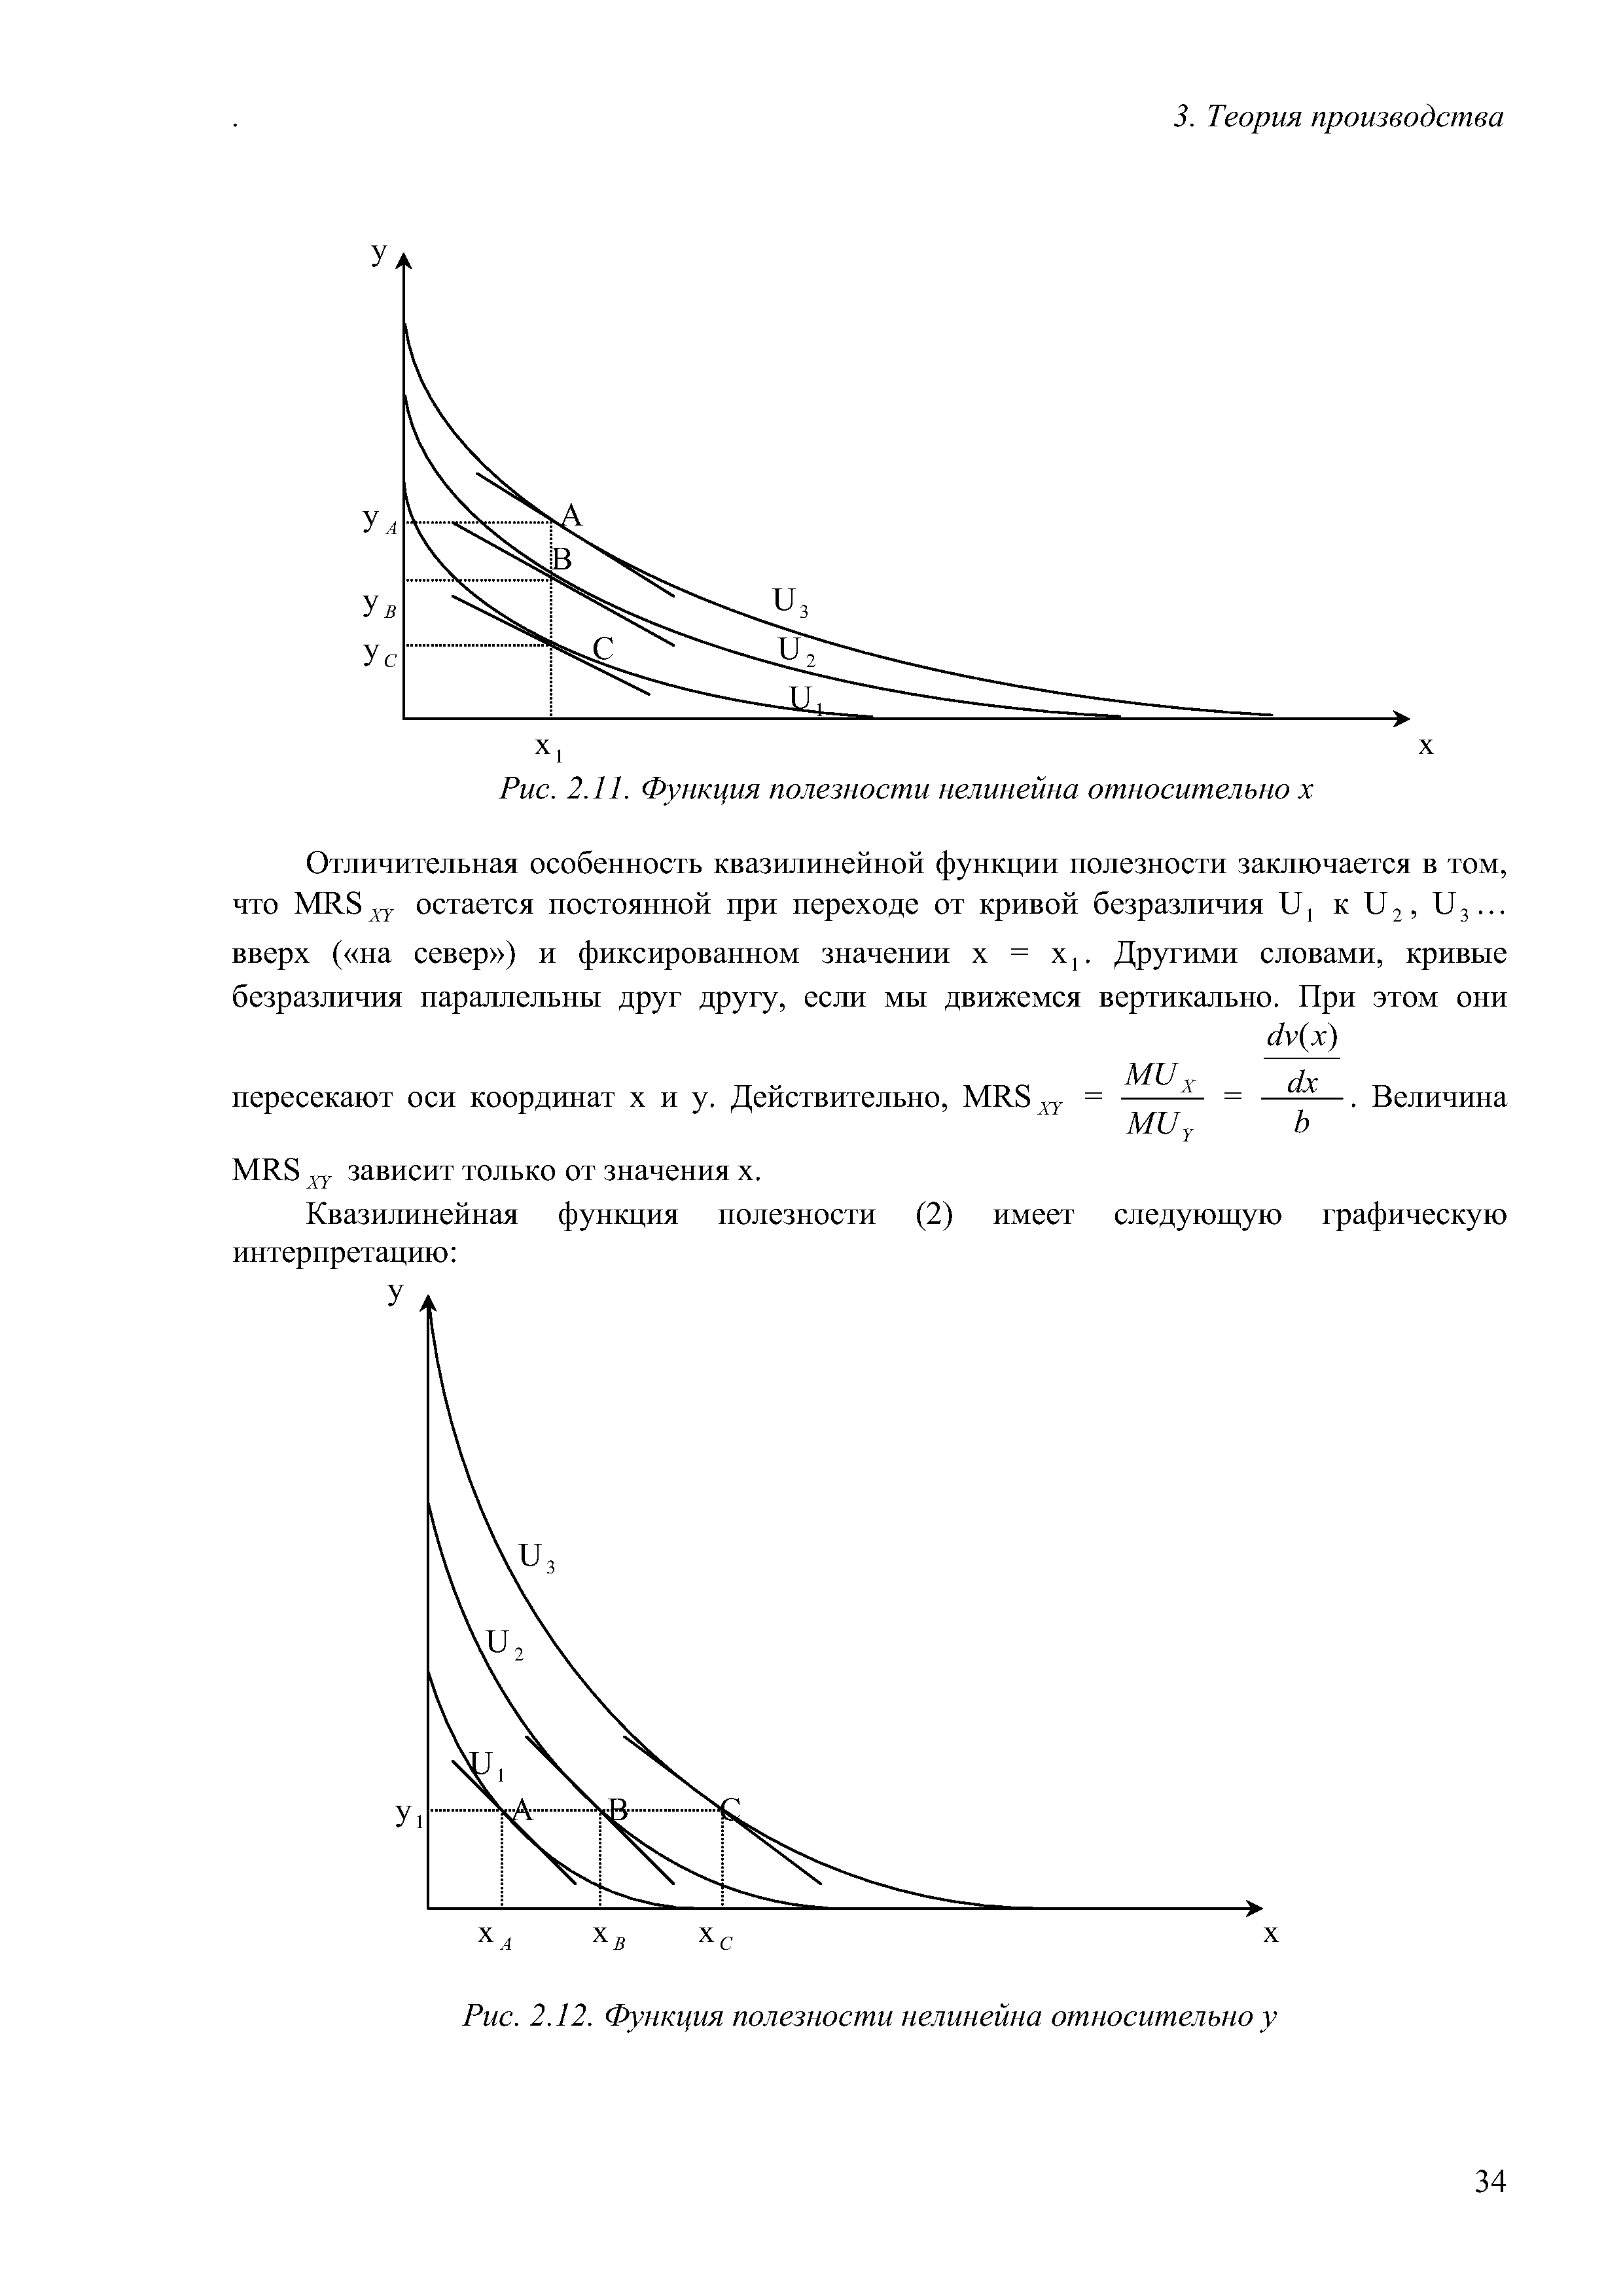 Рис. 2.11. Функция полезности нелинейна относительно х
